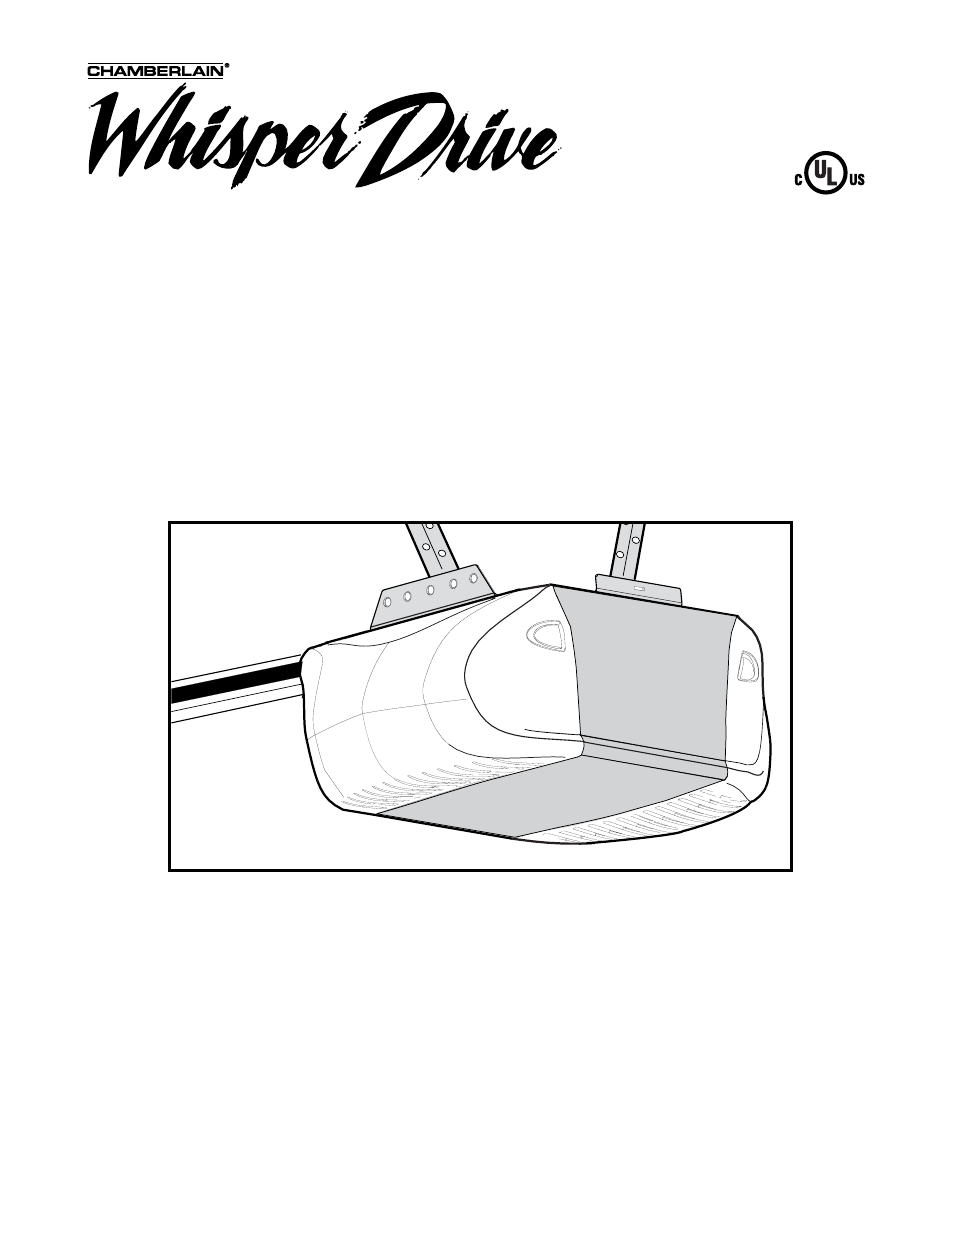 Chamberlain Whisper Drive Manual - slidesharefile